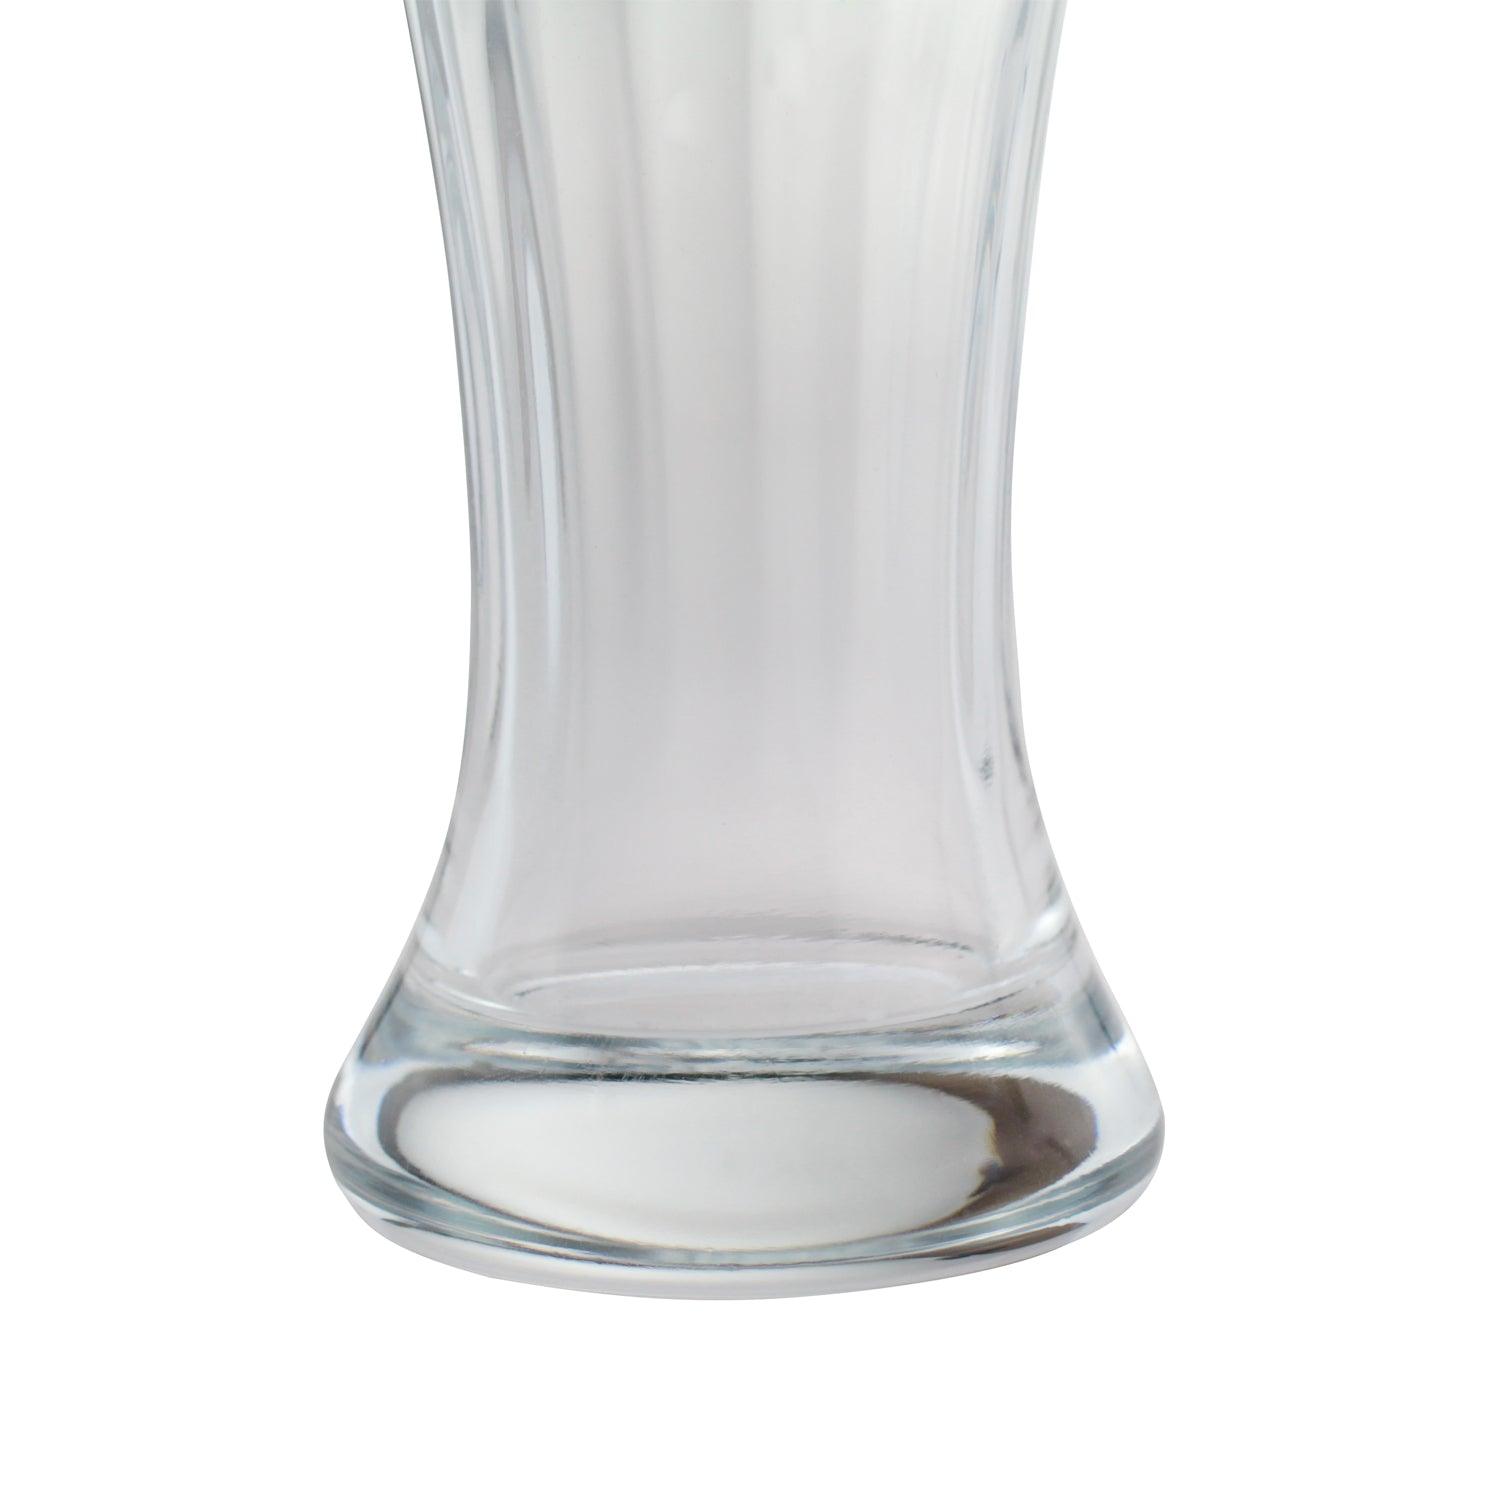 Weißbierglas mit Logo - bavariashop - mei LebensGfui